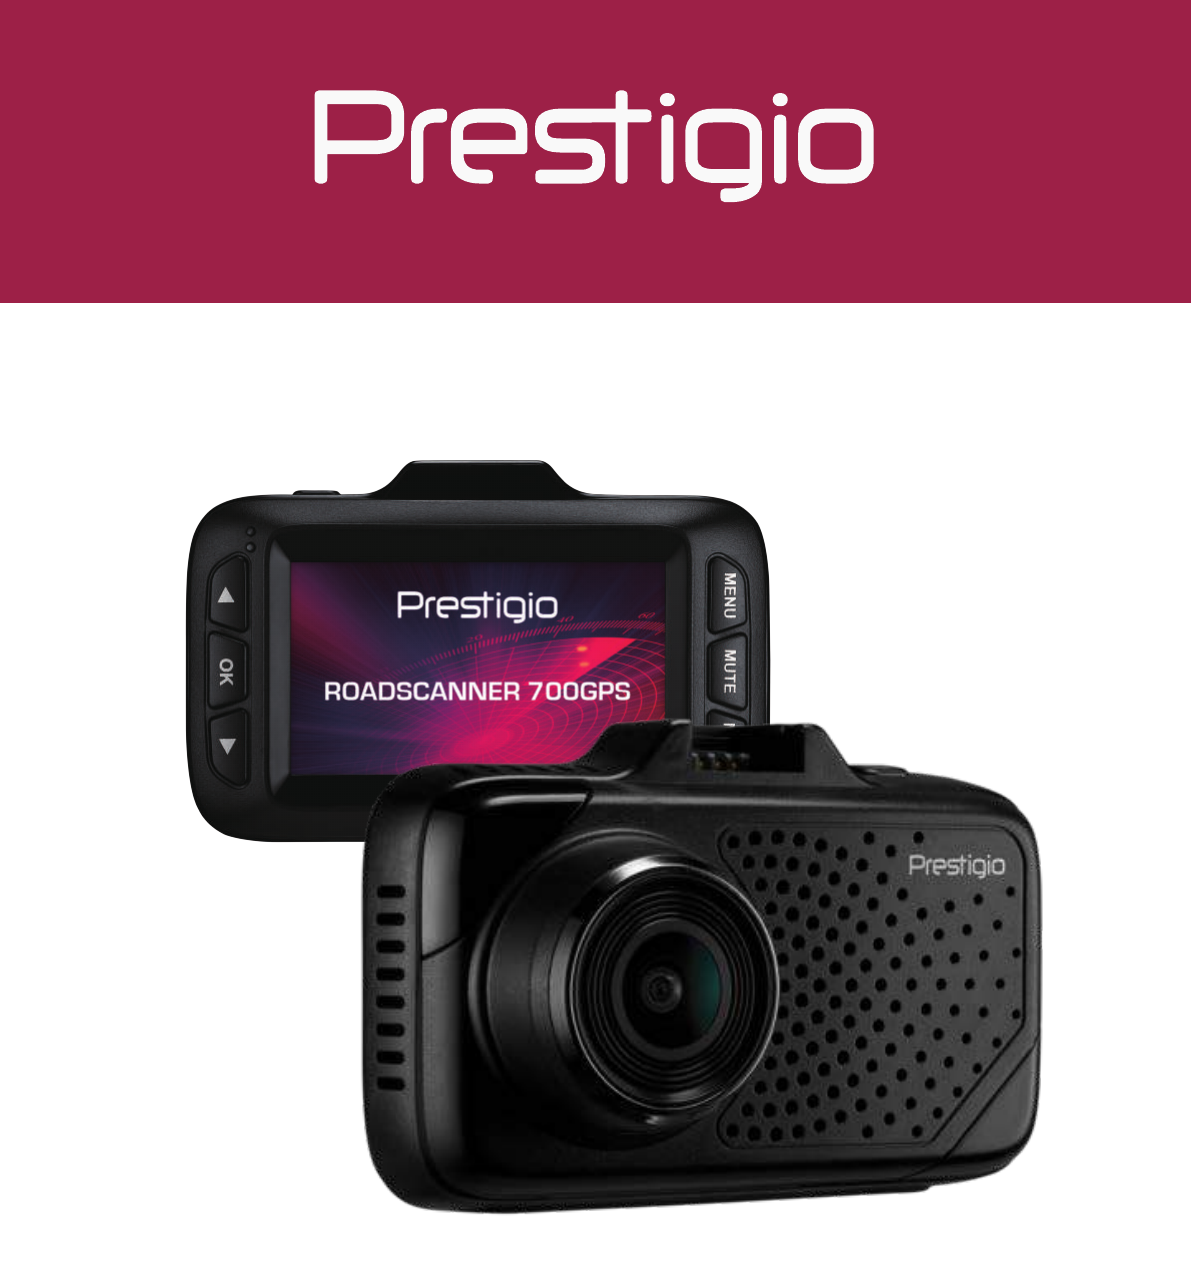 Prestigio roadscanner 700 gps: характеристики и отзывы владельцев, как обновить базу